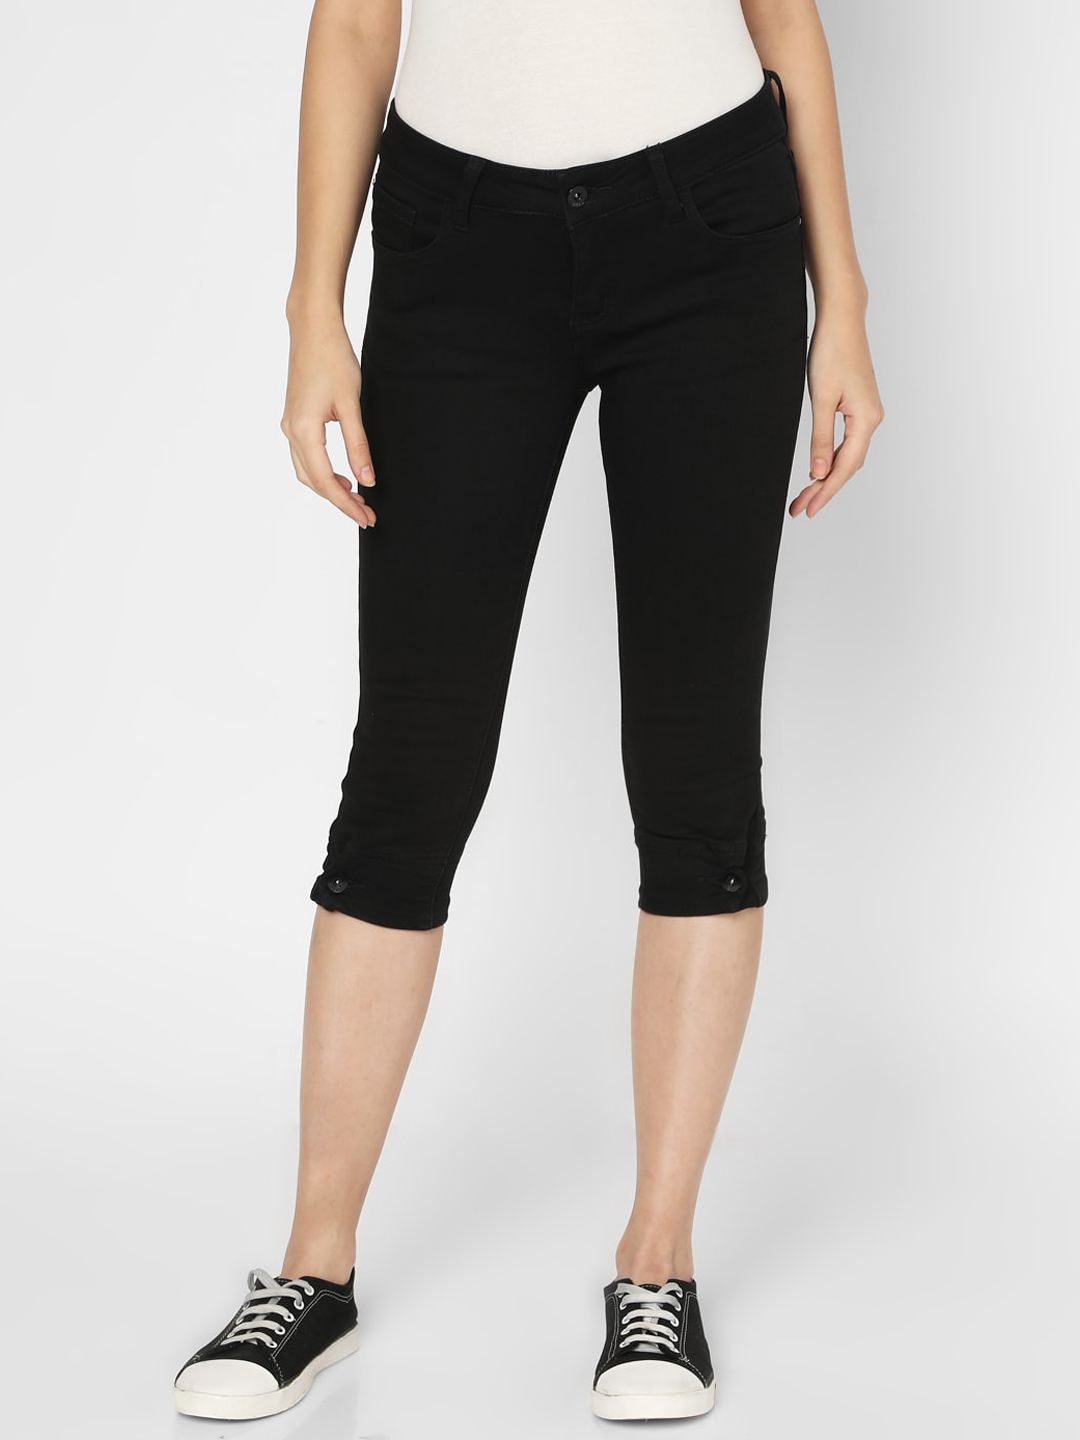 Buy Deal Jeans Women Black Solid Slim Fit Capris - Capris for Women ...